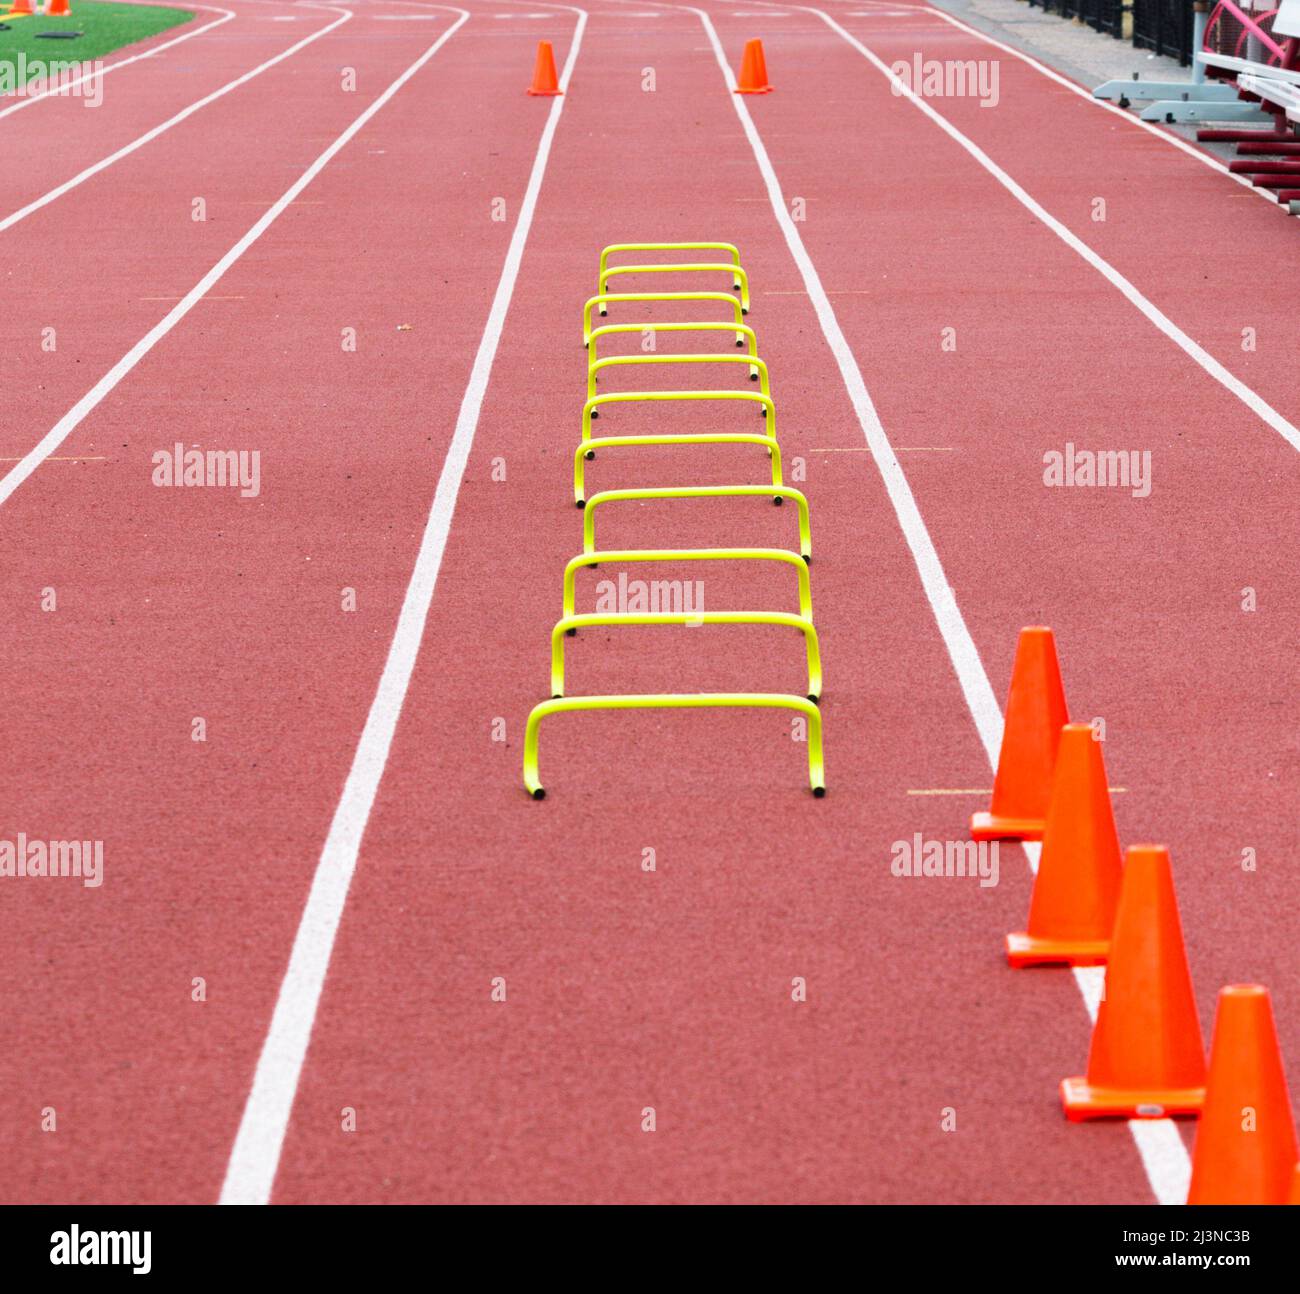 Undici ostacoli di plastica gialli alti sei pollici sistemati nella corsia quattro per lo sprinter della scuola superiore per correre sopra con coni arancioni nella distanza che contrassegna la pinna Foto Stock